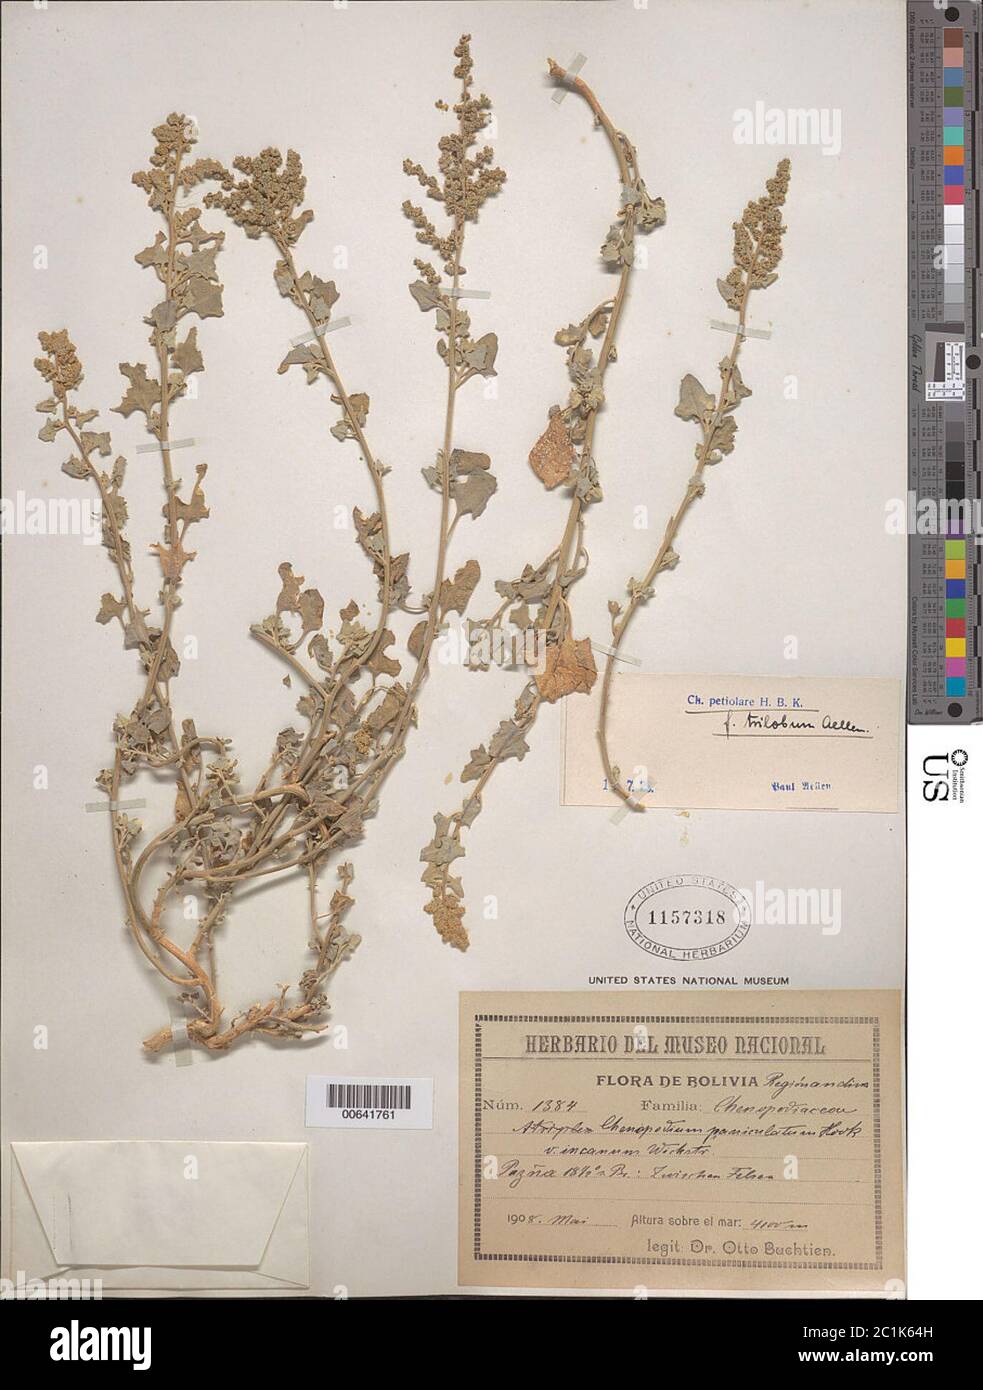 Chenopodium petiolare HBK Chenopodium petiolare HBK. Stock Photo